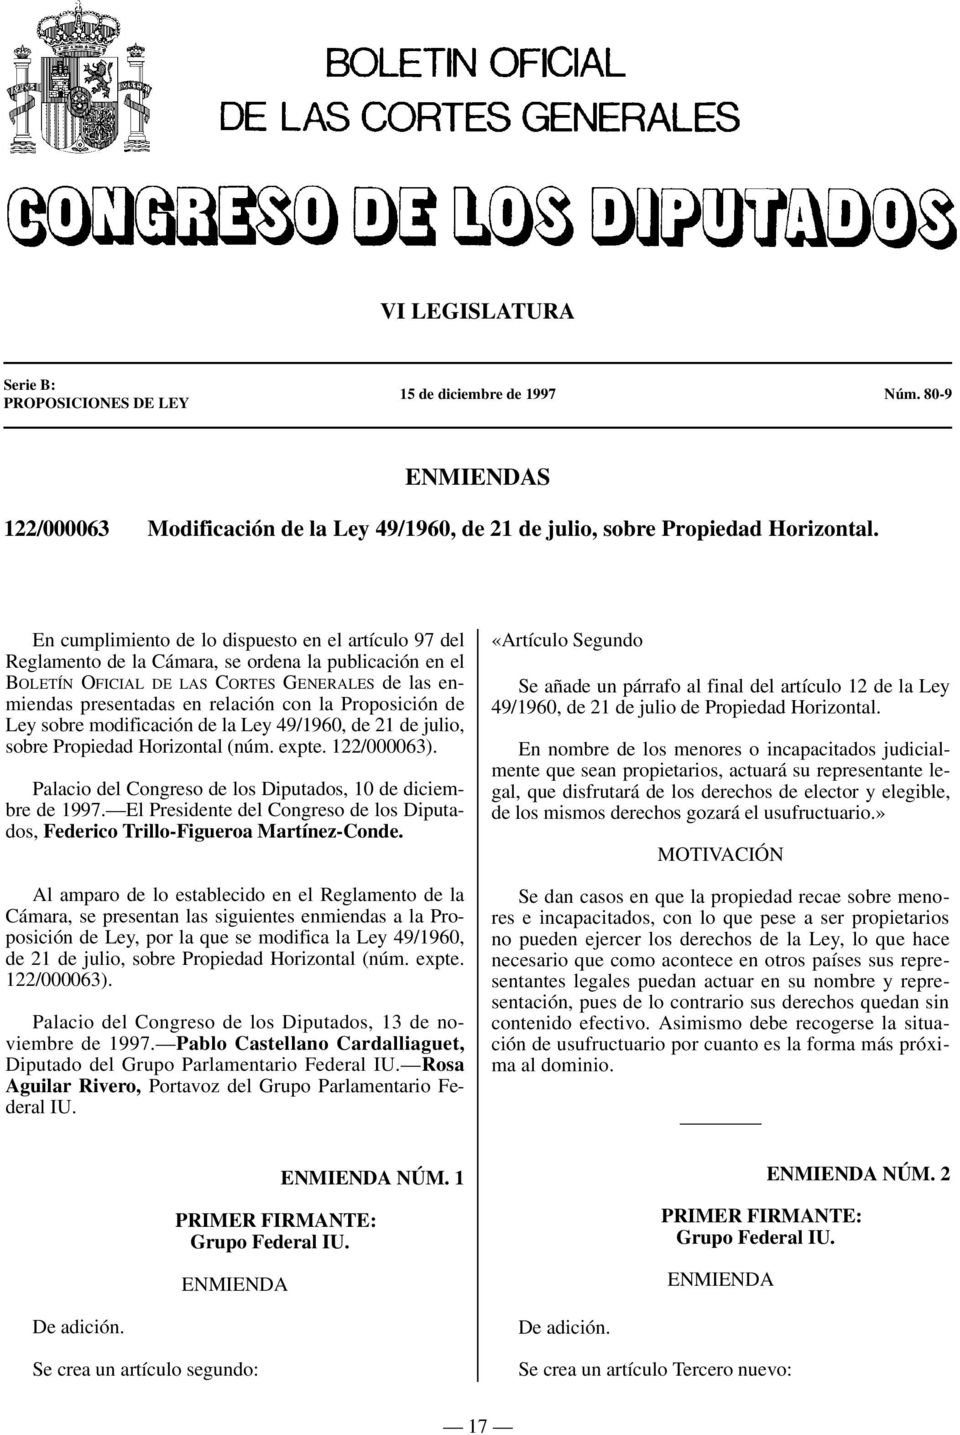 Proposición de Ley sobre modificación de la Ley 49/1960, de 21 de julio, sobre Propiedad Horizontal (núm. expte. 122/000063). Palacio del Congreso de los Diputados, 10 de diciembre de 1997.